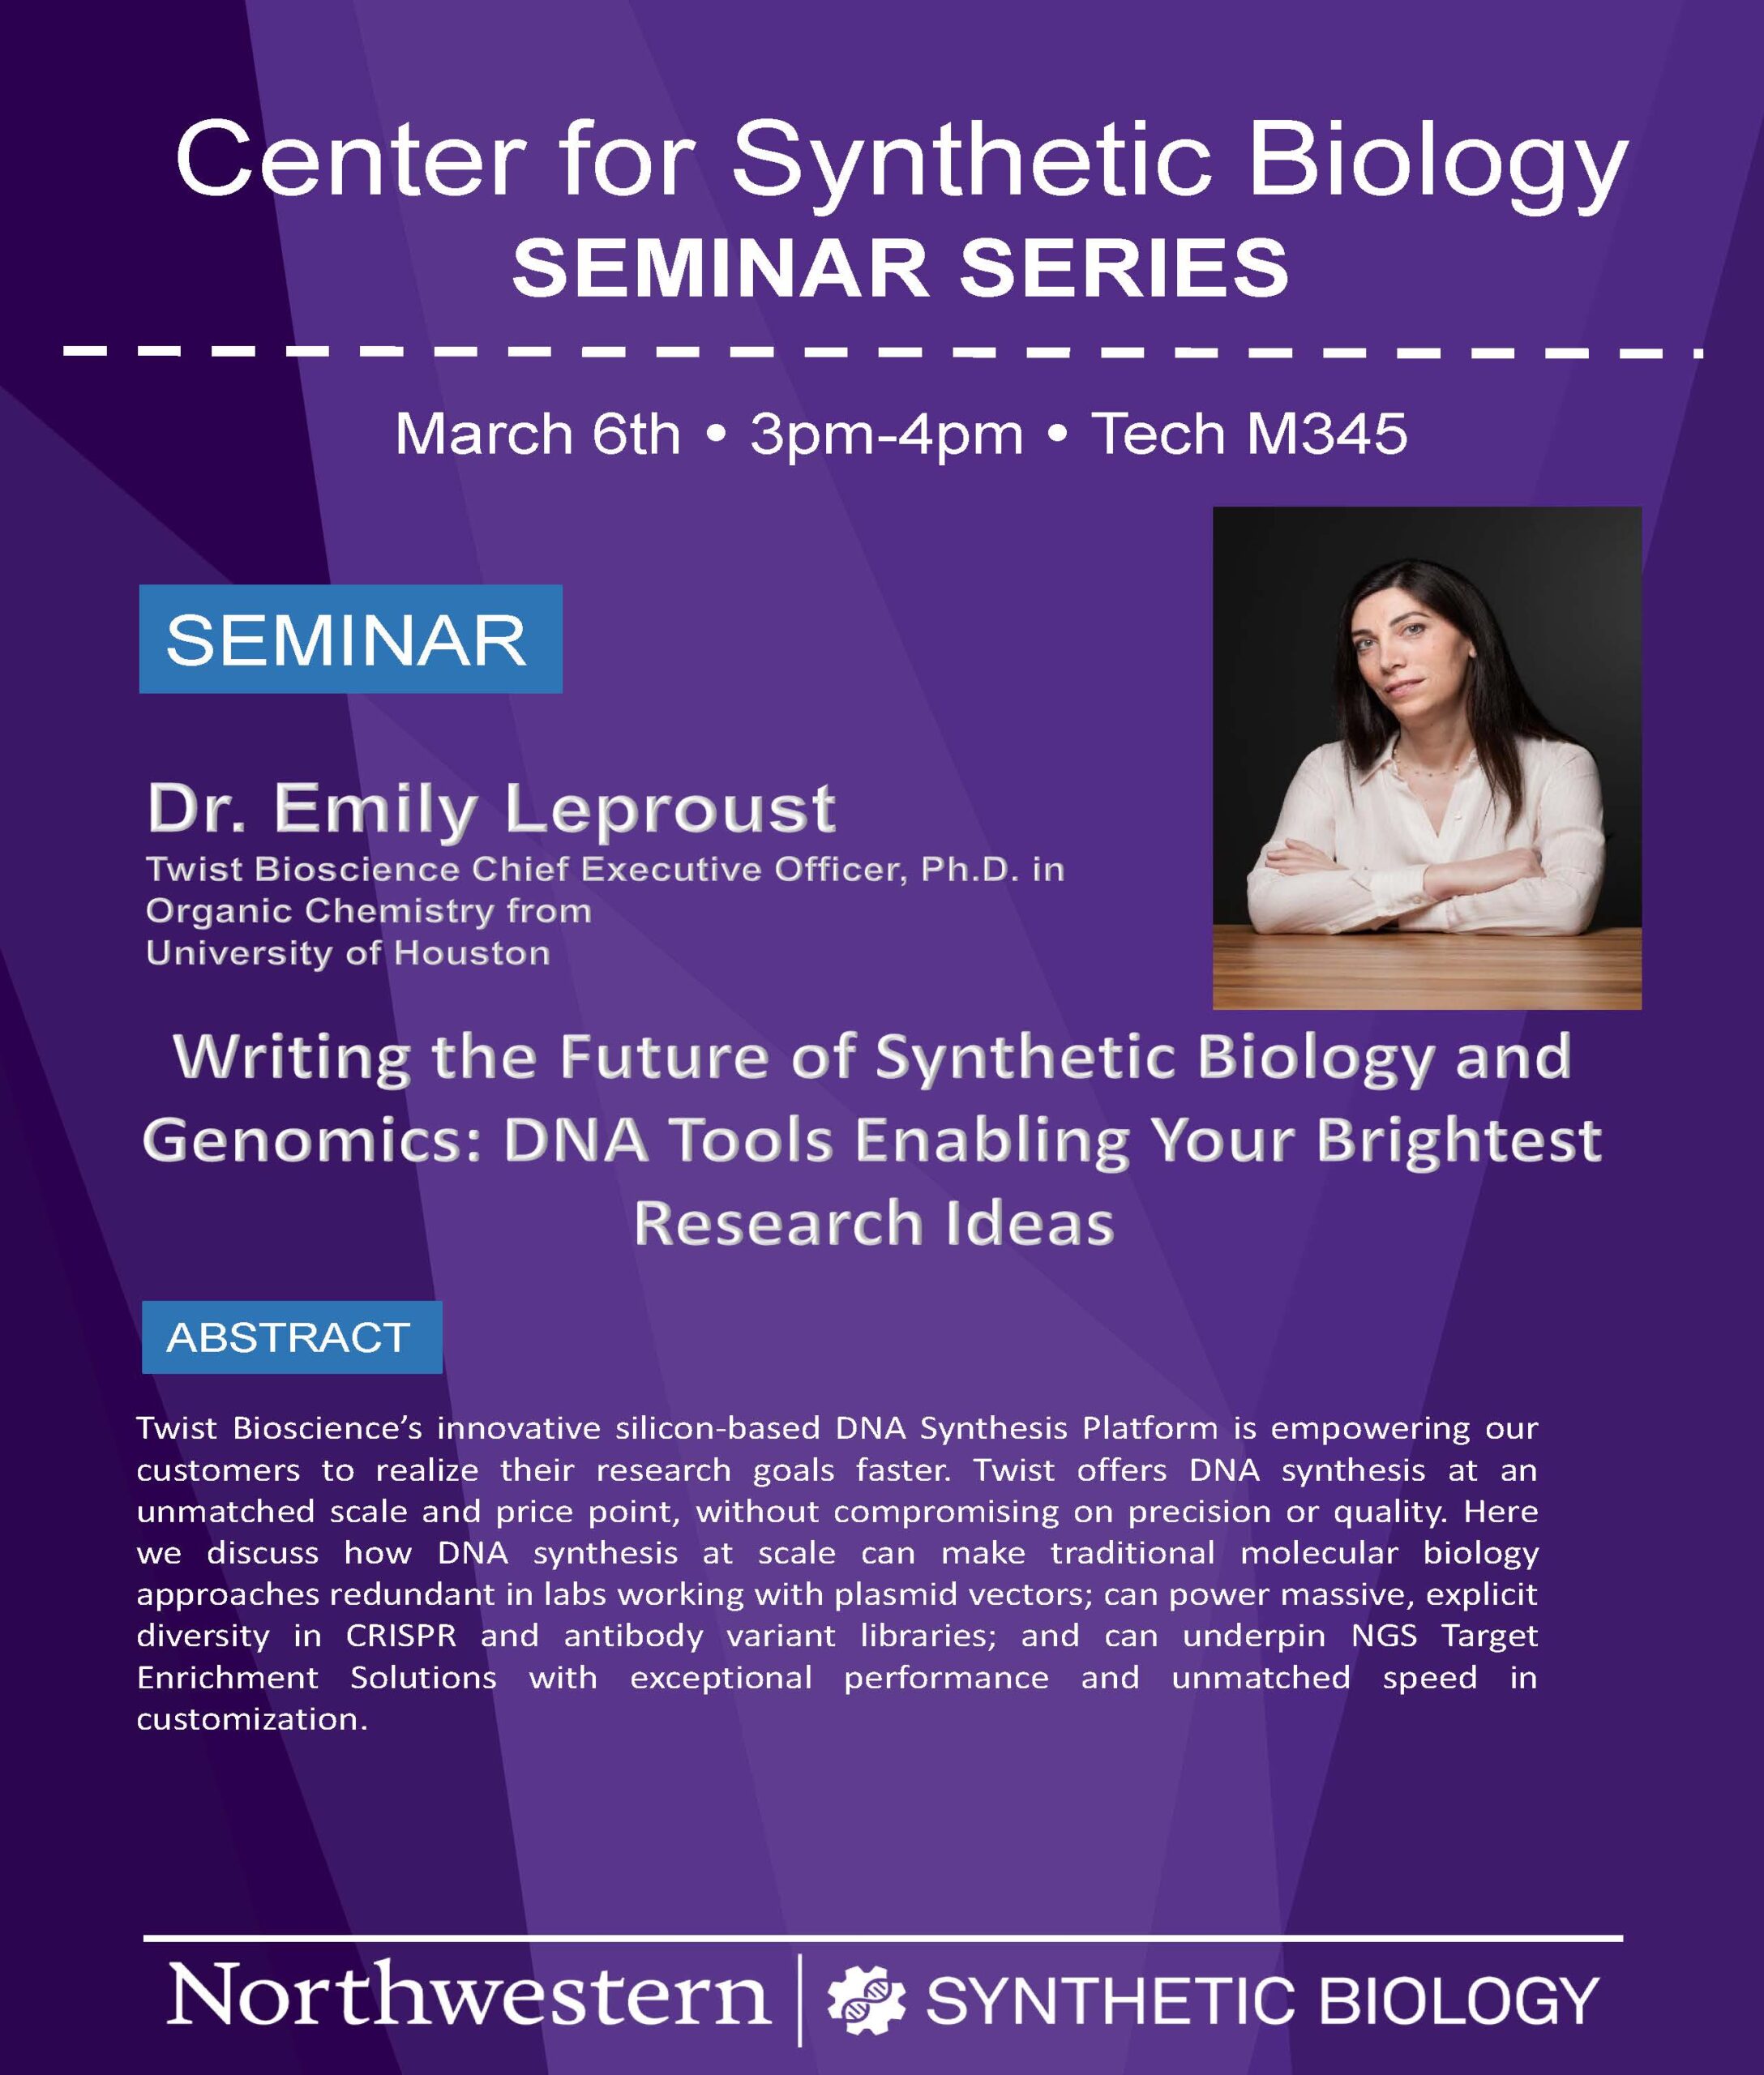 Emily Leproust seminar flyer